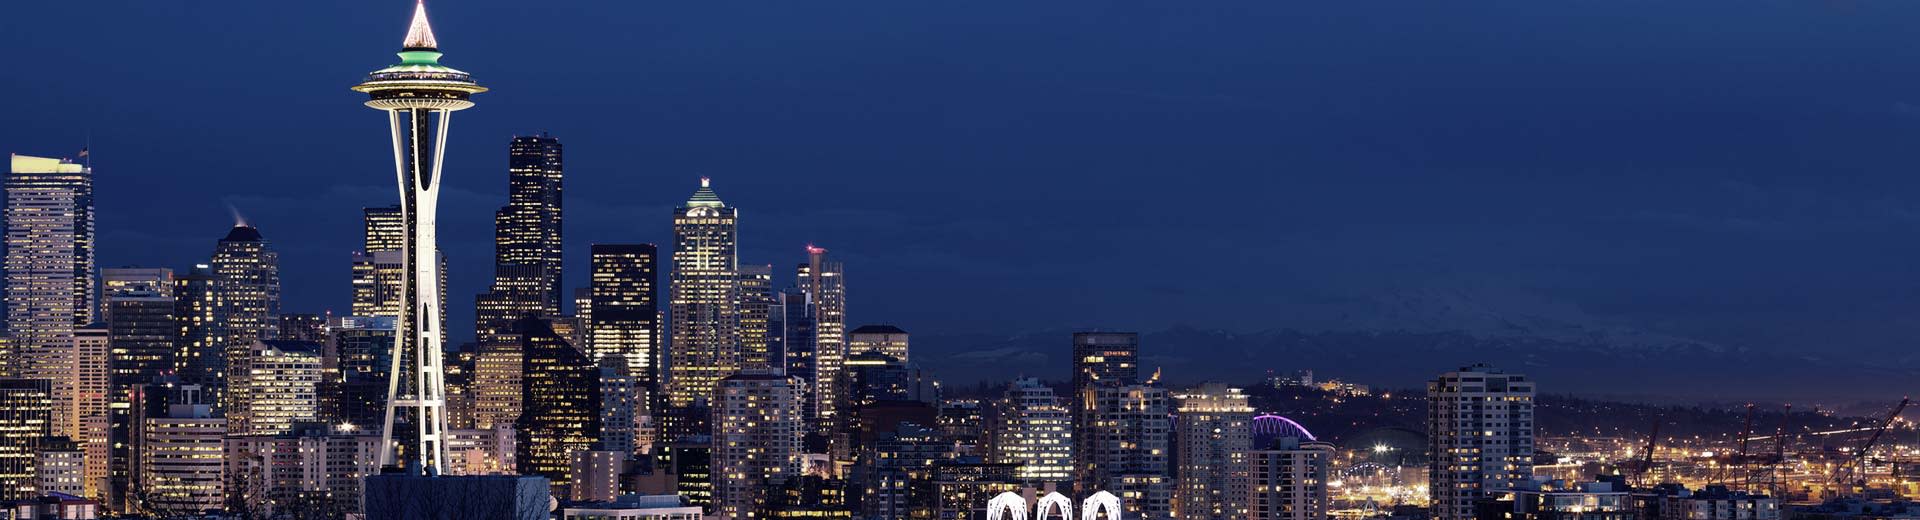 シアトルの有名なスペース・ニードルが夜空にそびえ、周囲には高層ビルやアパートが立ち並ぶ。